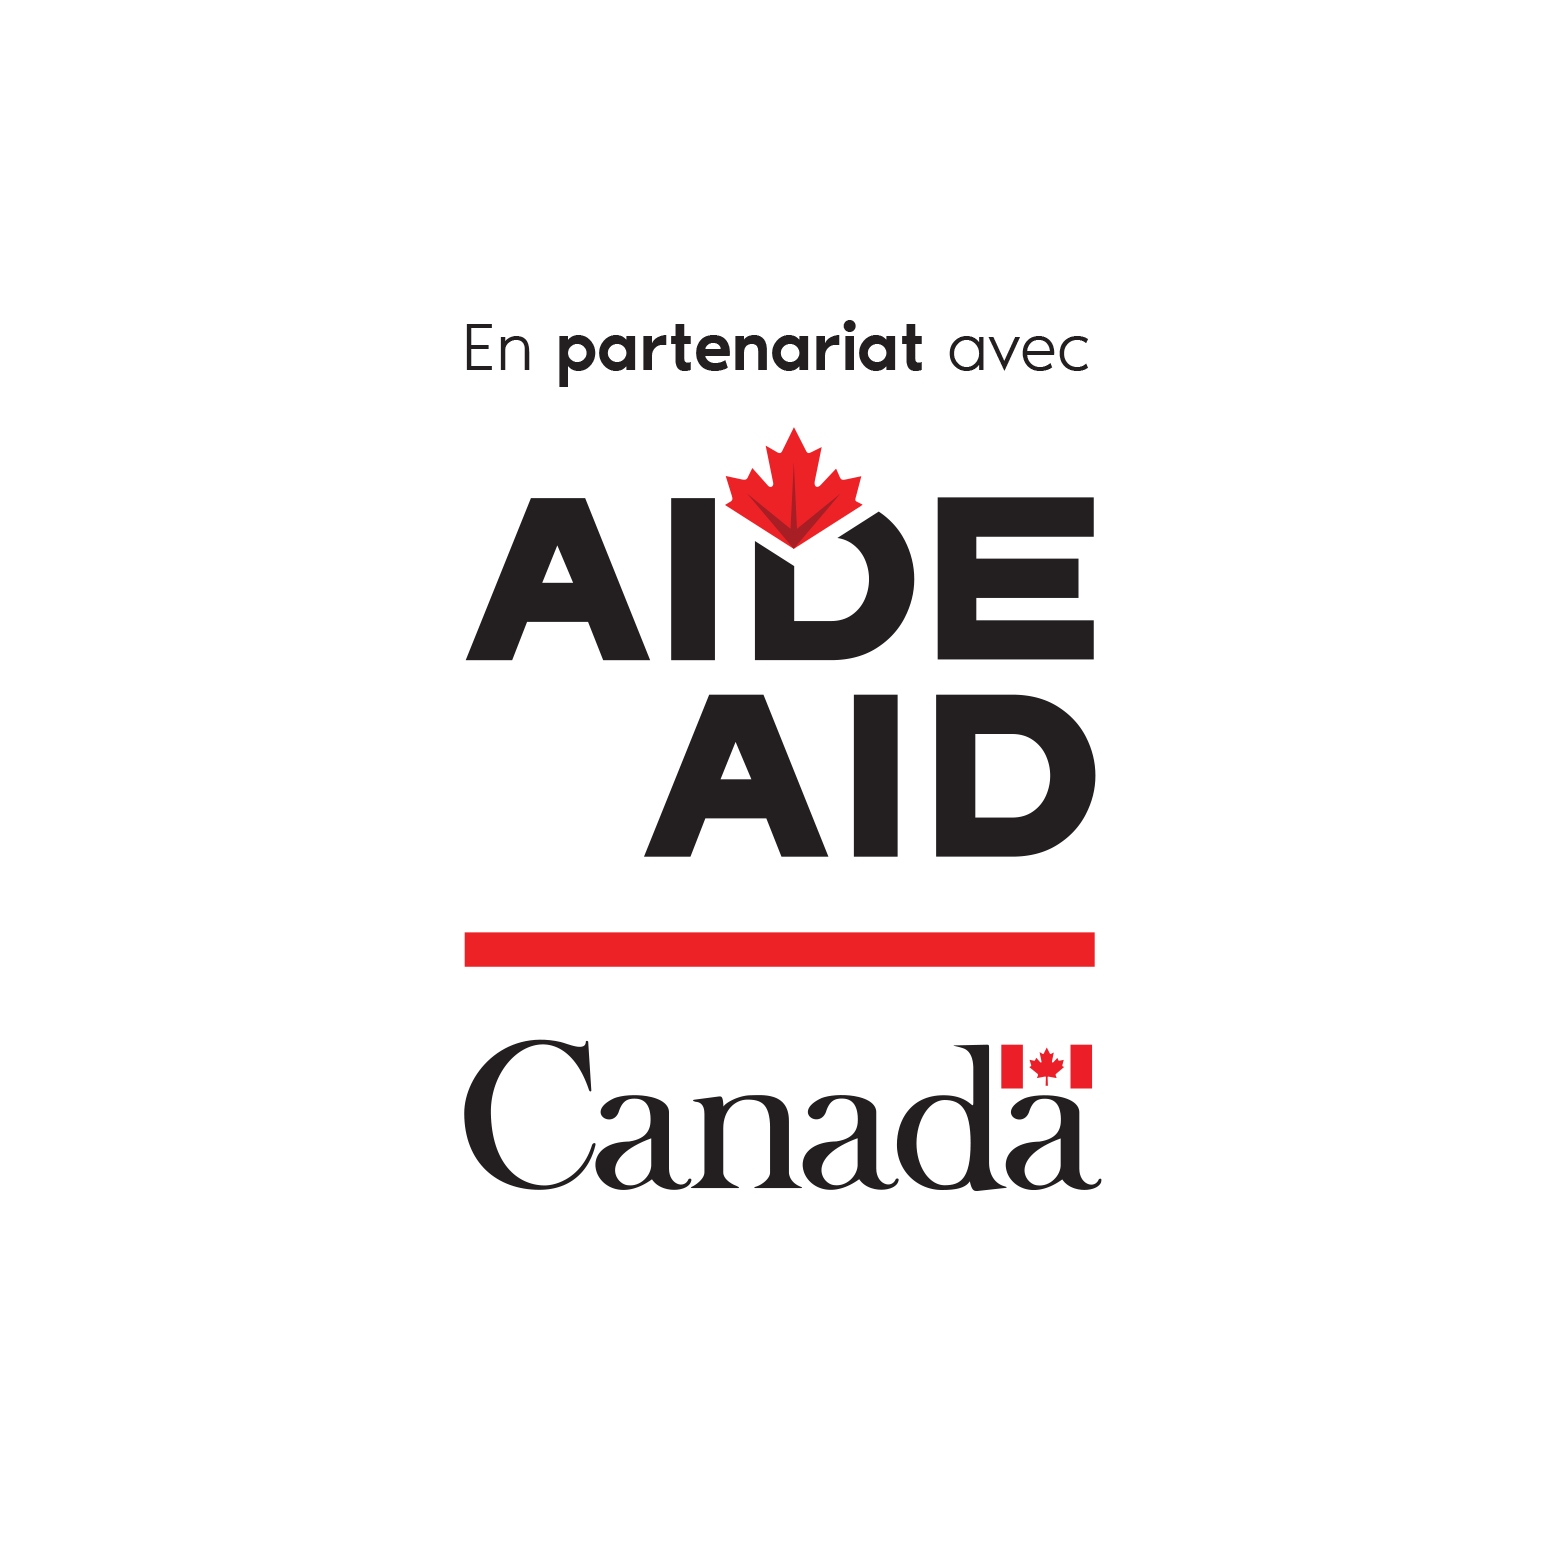 L’image montre les mots « En partenariat avec » en haut de l’image, le mot « Aide » en majuscules avec une feuille d’érable apposée au haut du « D », l’équivalent anglais « Aid » en dessous, également en majuscules, une ligne horizontale rouge et le mot-symbole « Canada ».